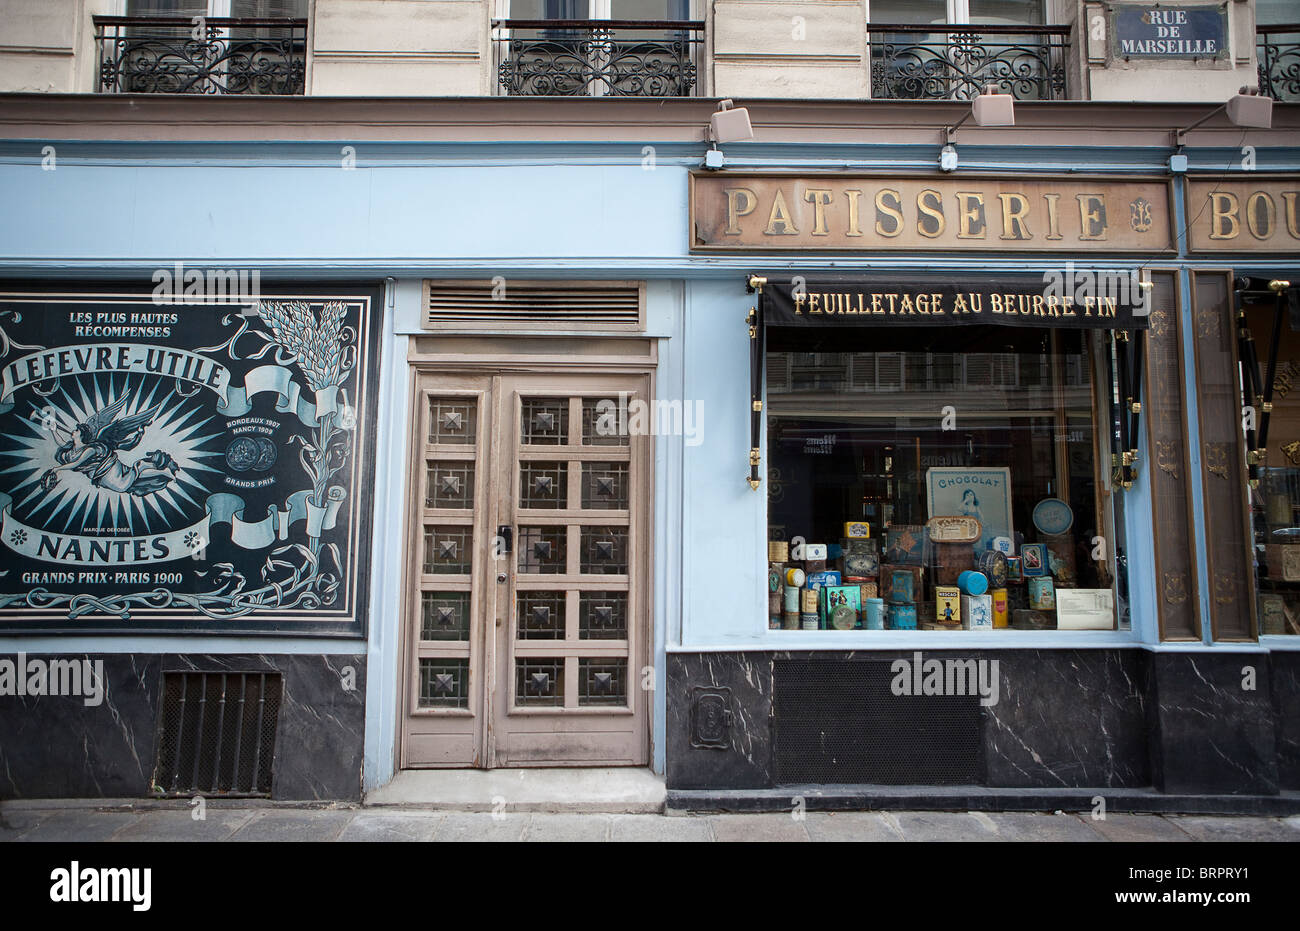 Boulangerie du Pain et des idees, Paris Stock Photo - Alamy